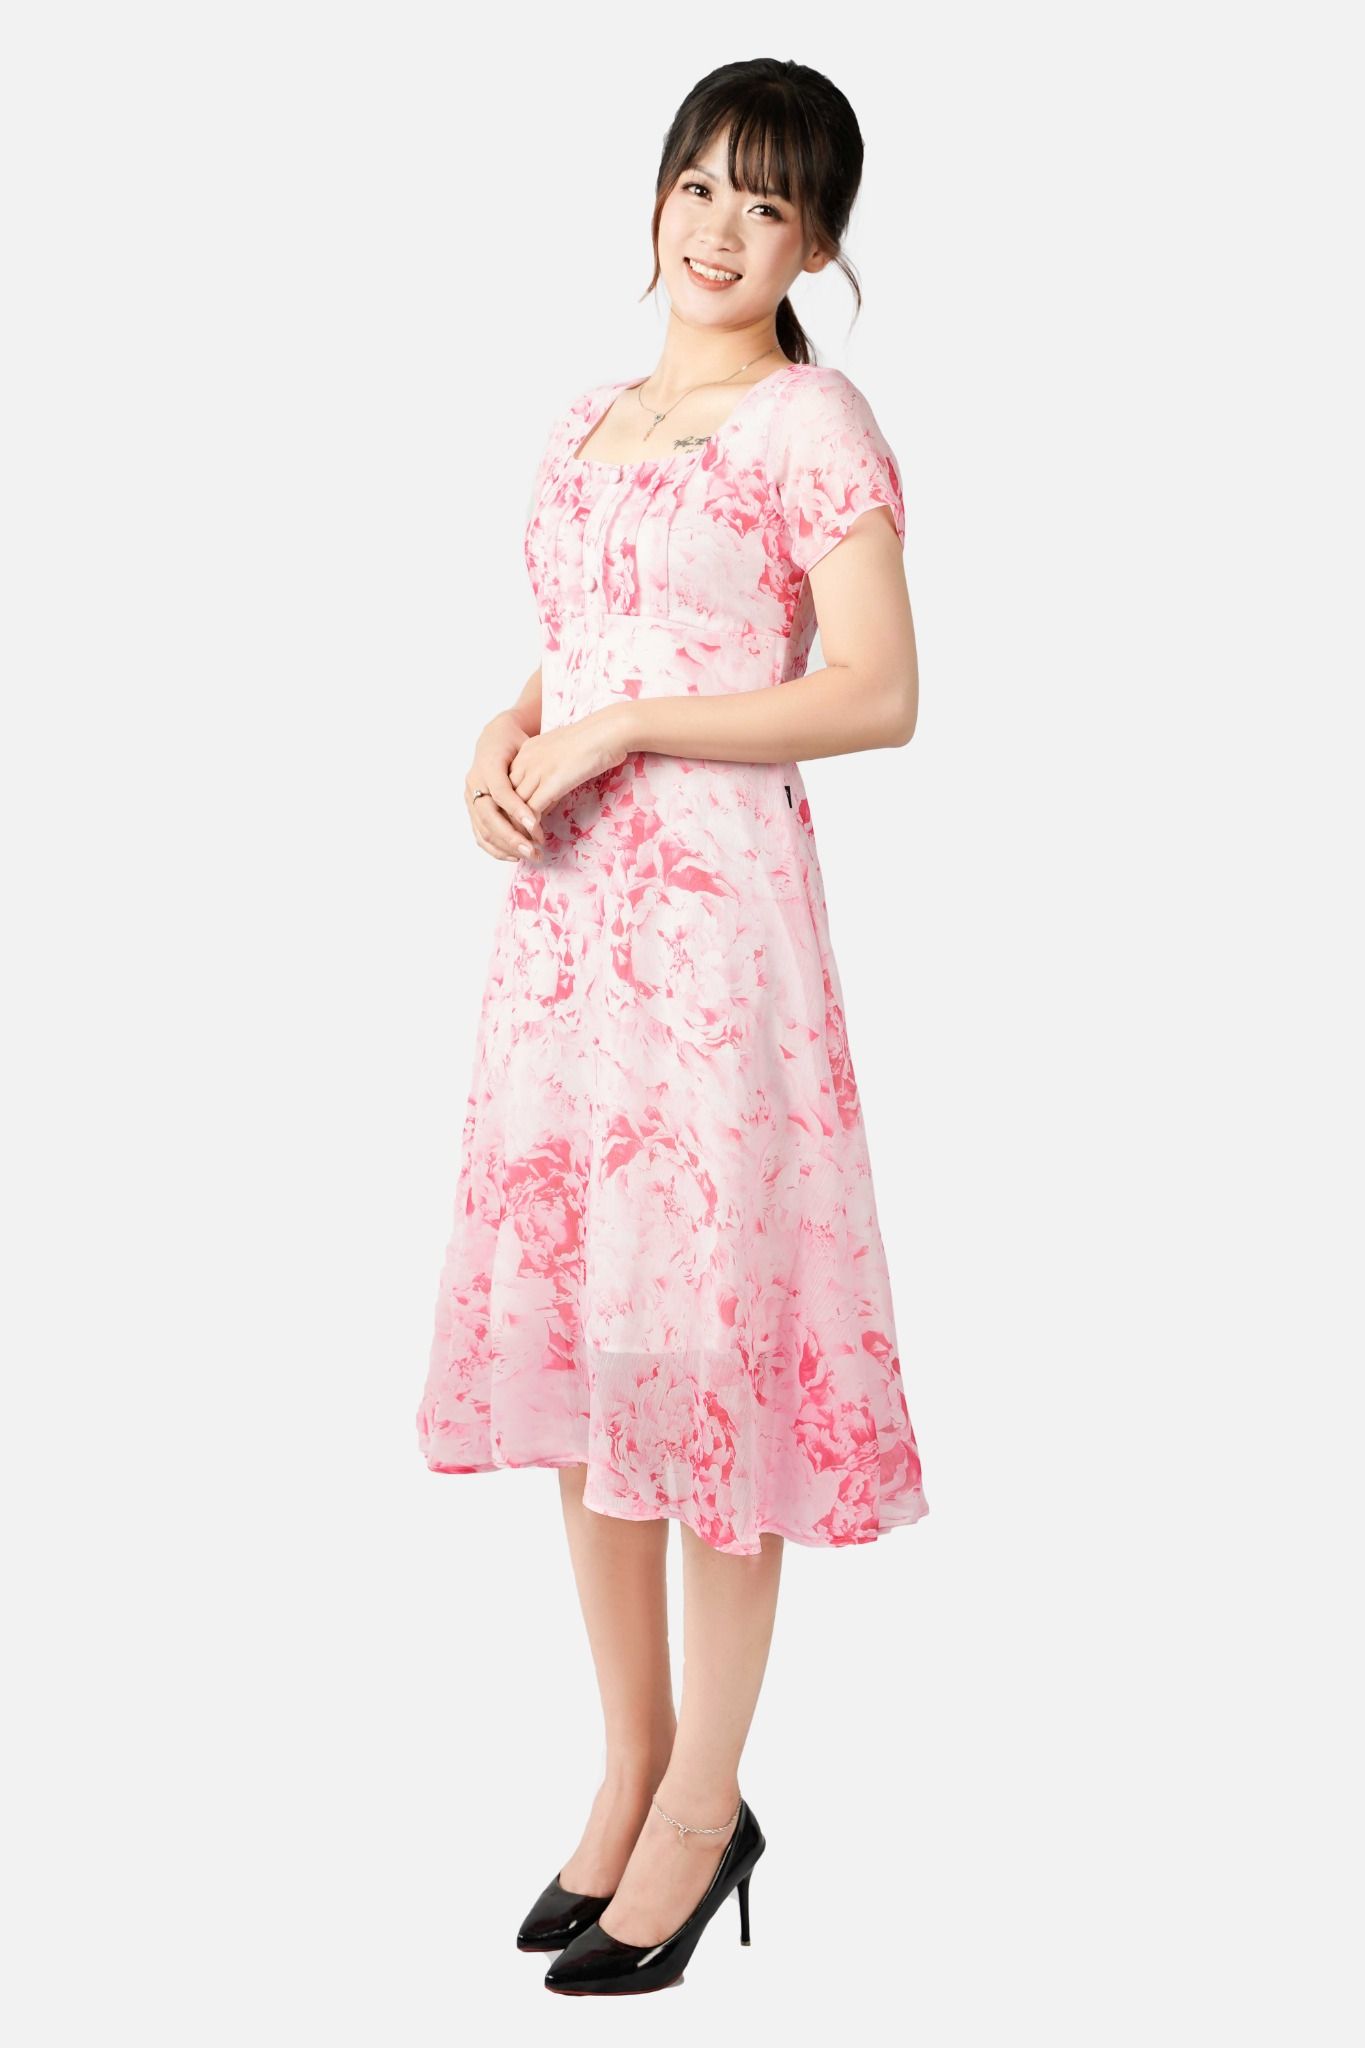 Đầm nữ 2 lớp họa tiết hoa, cổ vuông ngực xếp ly chân xòe, hồng - 2105DAMH010HOG